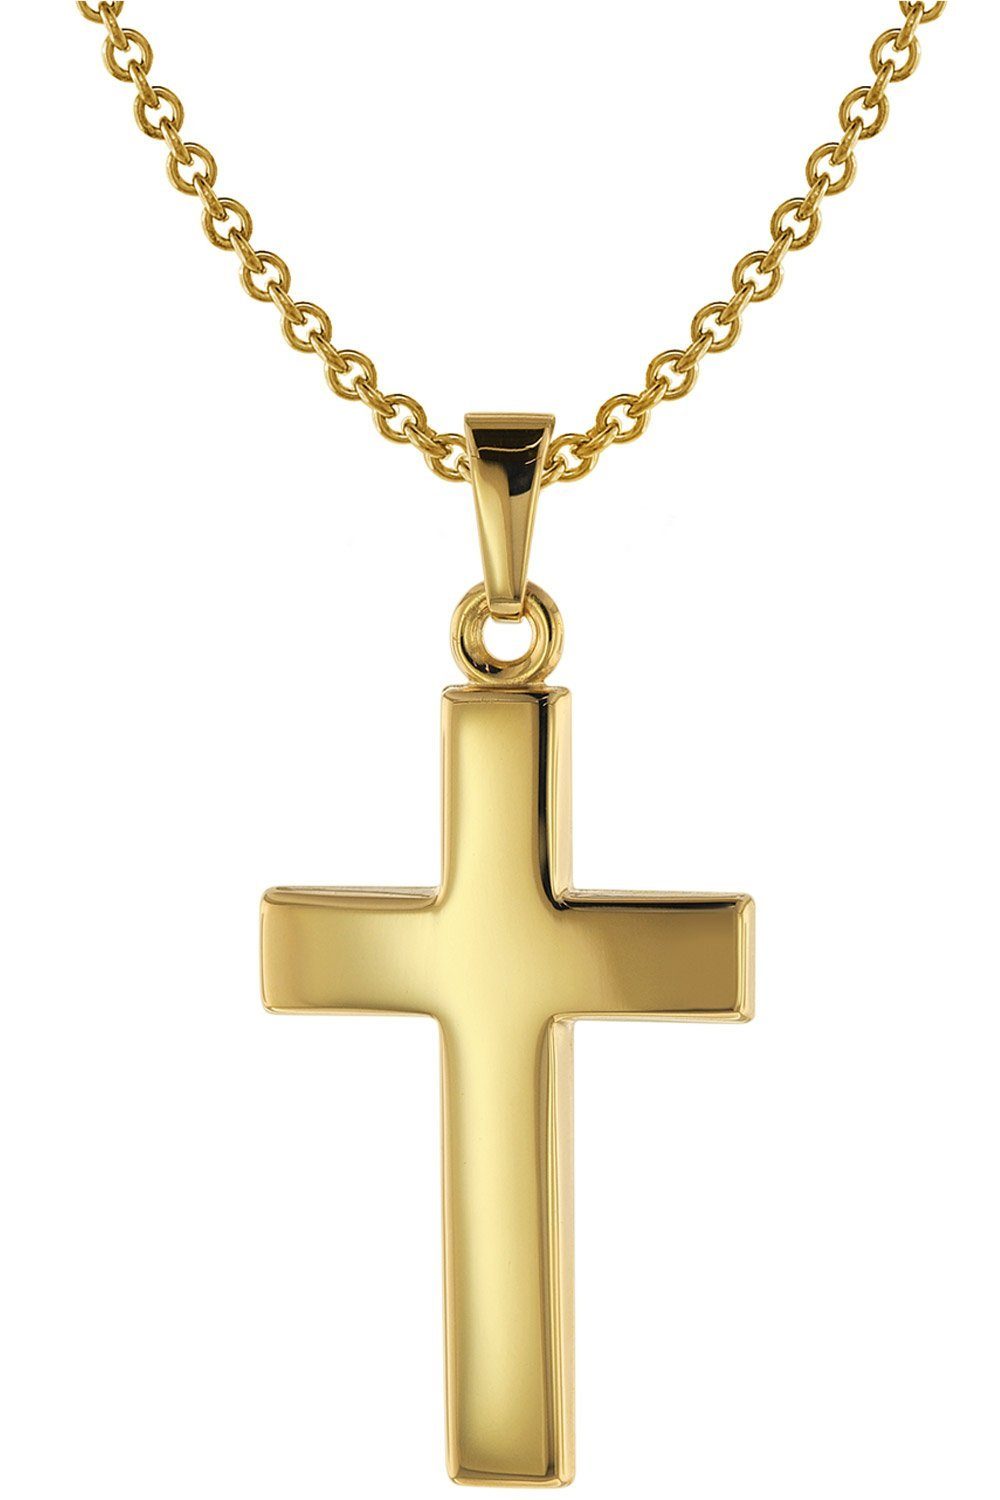 trendor Goldkette Kreuz-Anhänger 25 mm Gold 333 + Silberkette goldplattiert